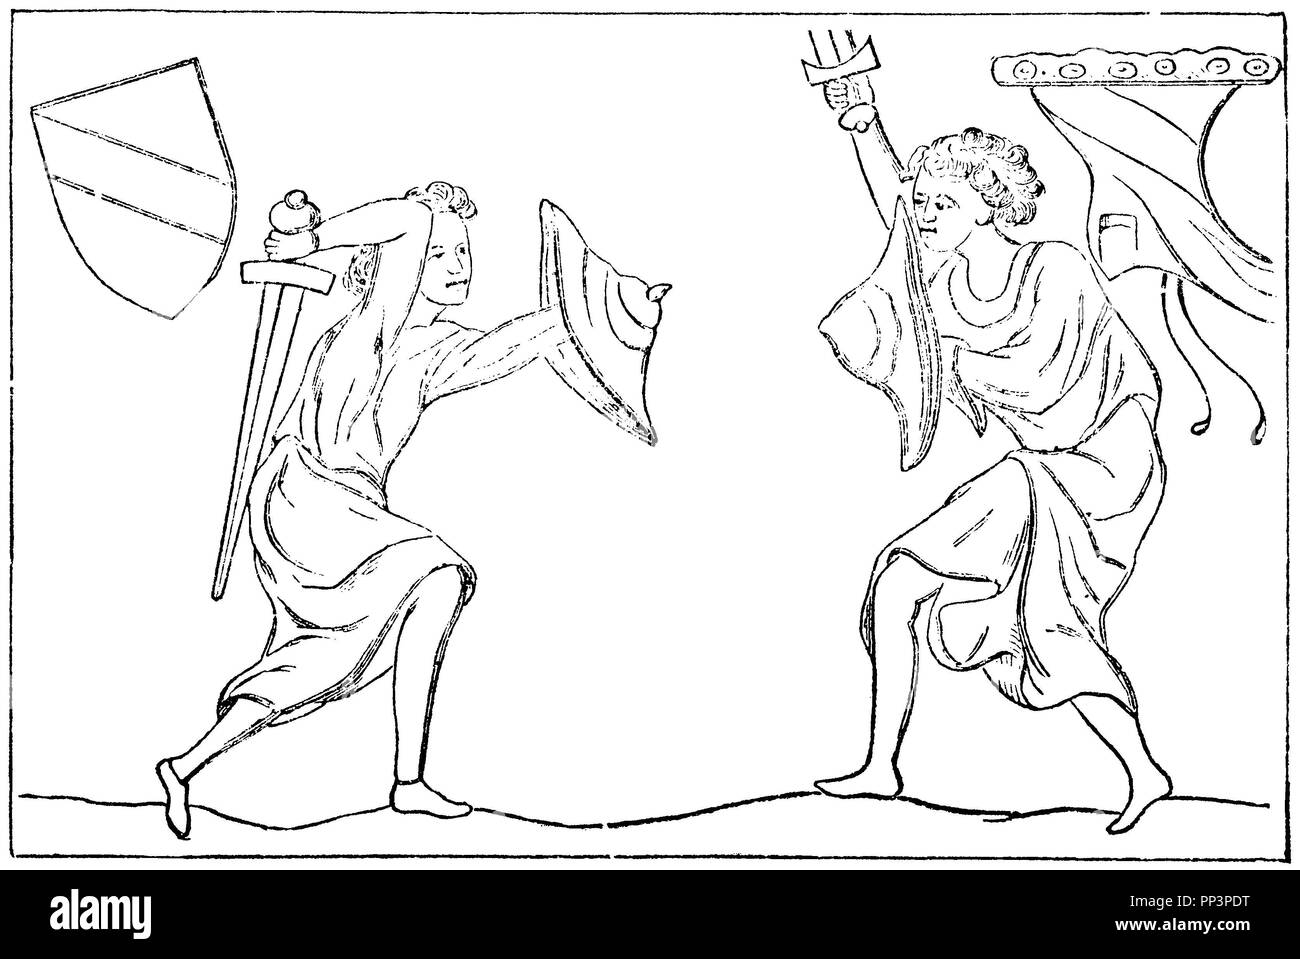 L'Allemagne dans le 13e et 14e siècles : duel. Gravure sur bois après photo en manuscrits, ménestrel contemporain Banque D'Images